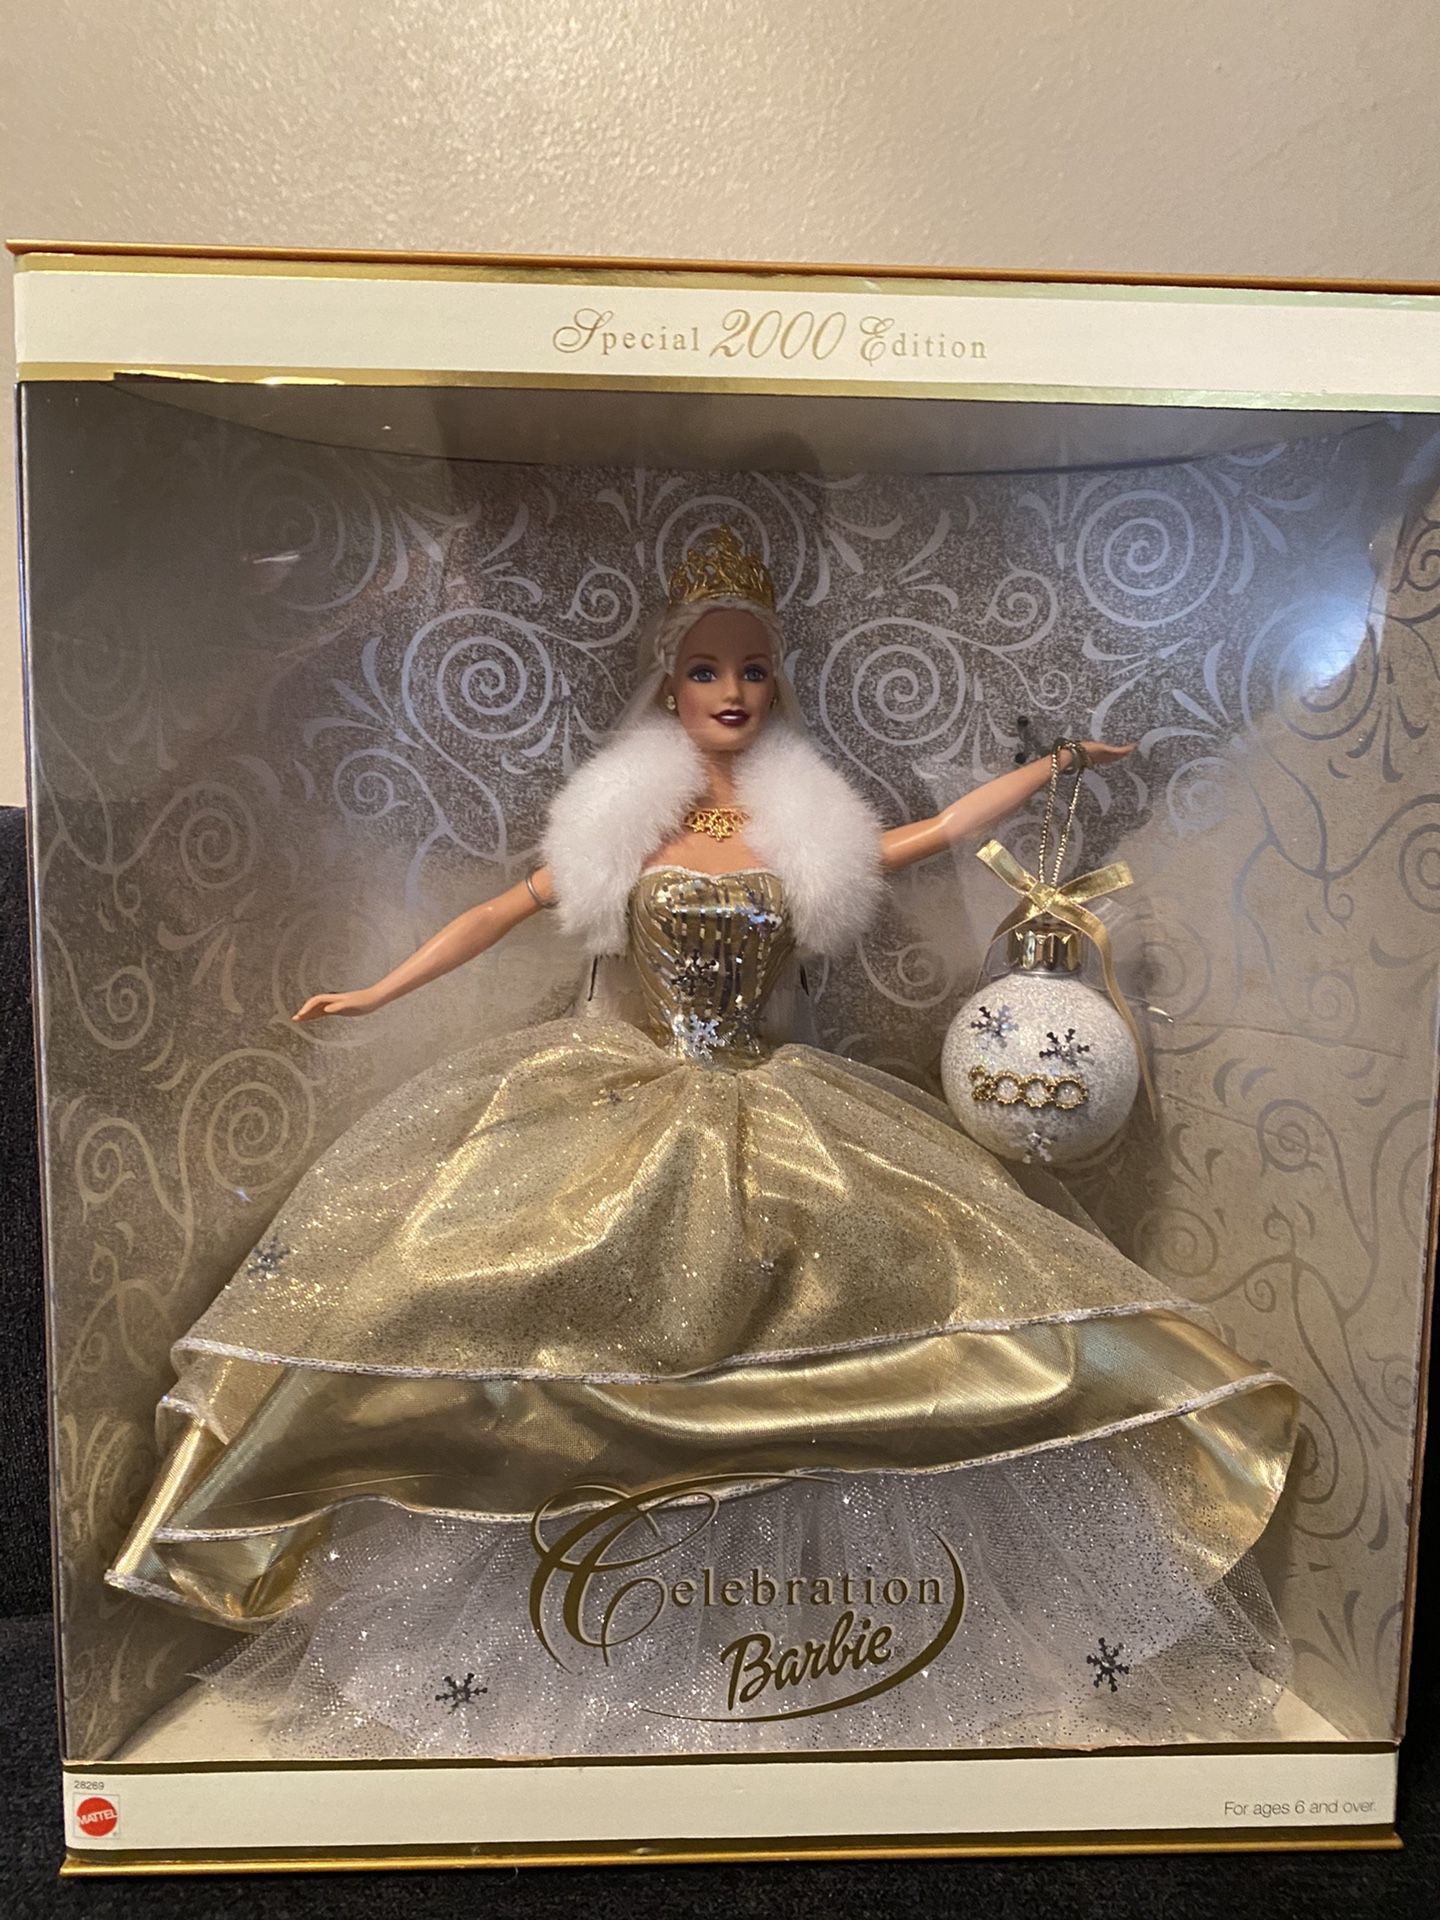 2000 Holiday Celebration Barbie